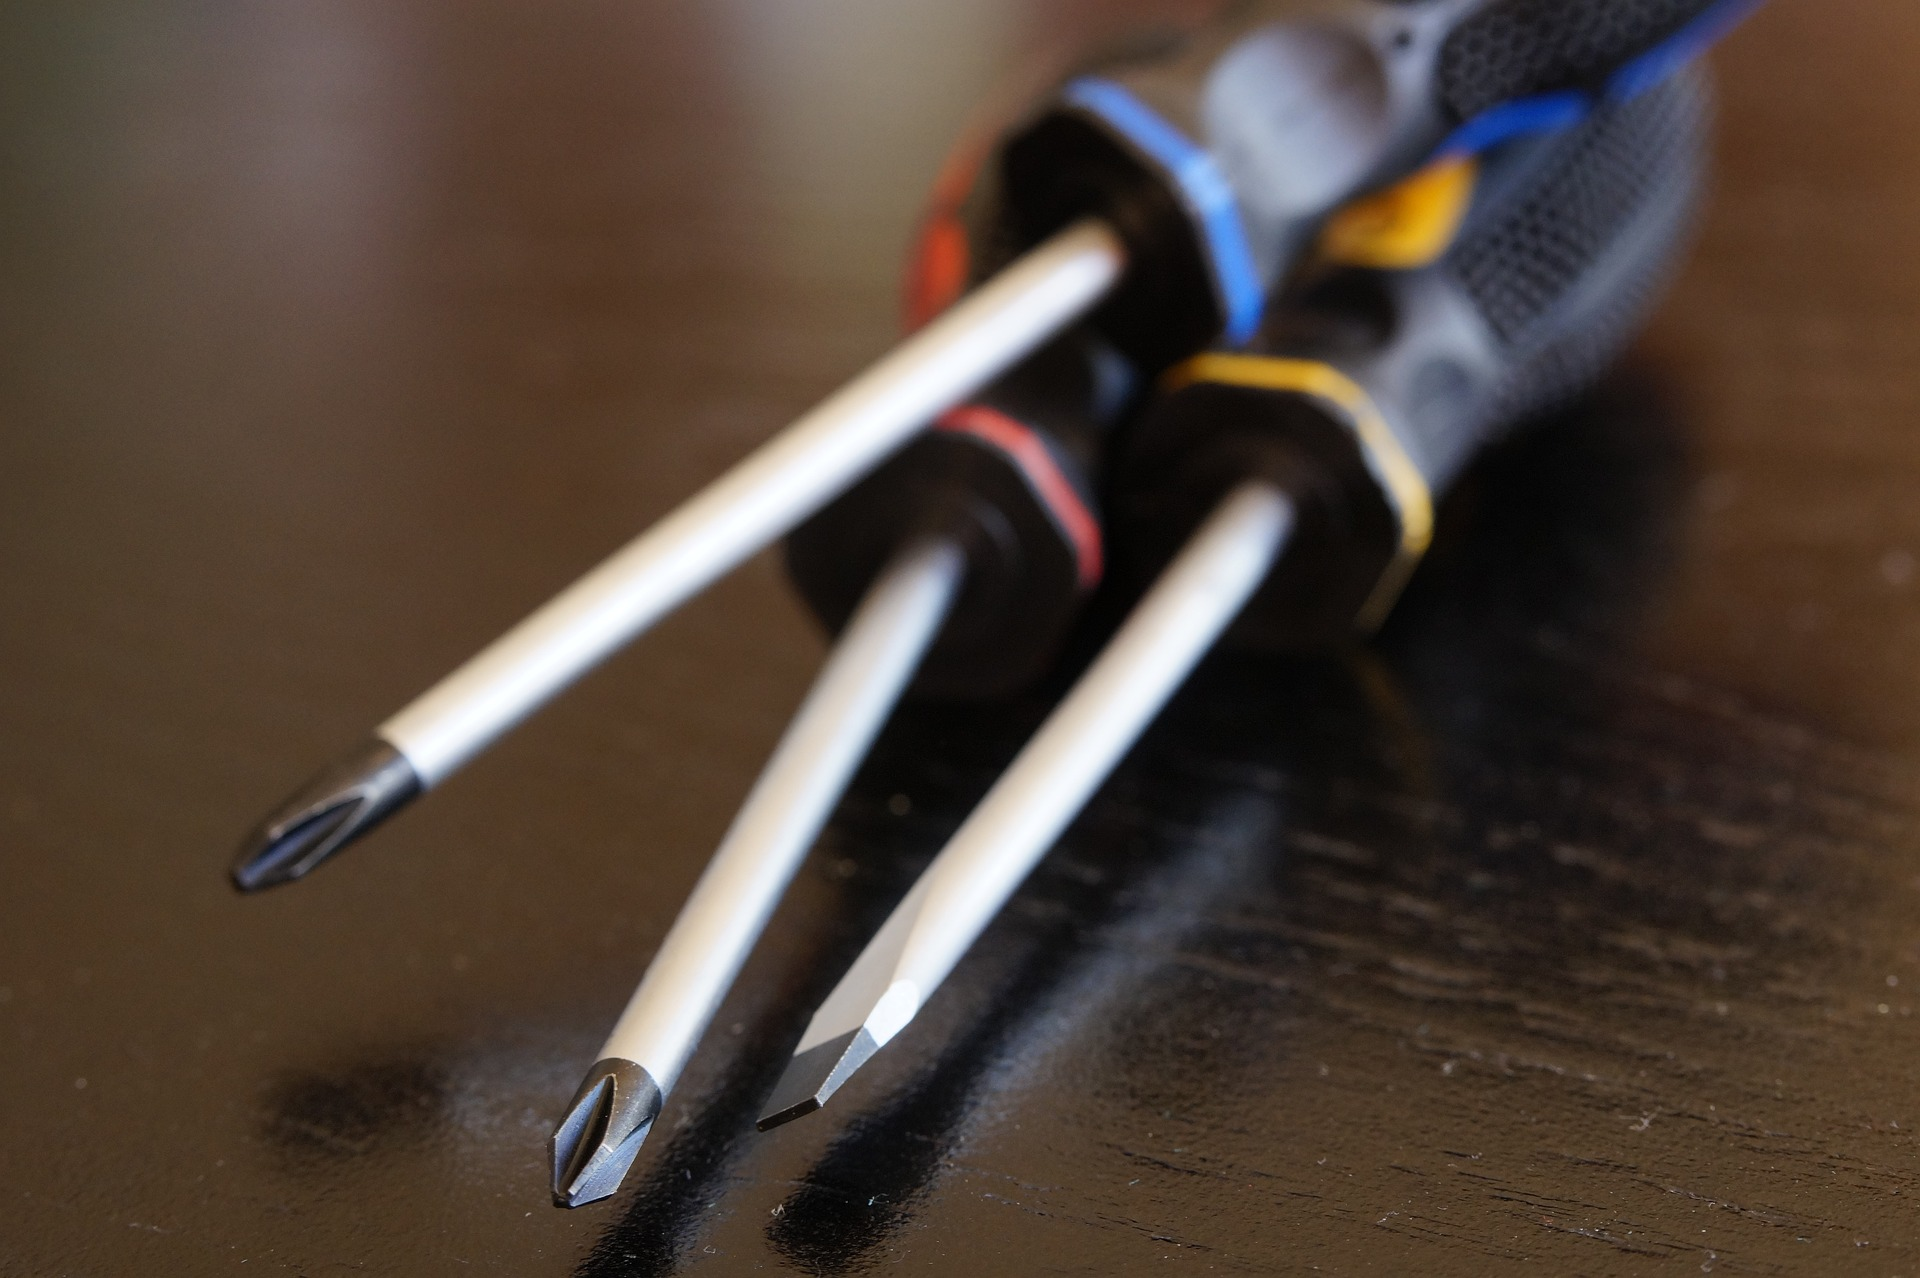 Screwdrivers - Three different screwdrivers